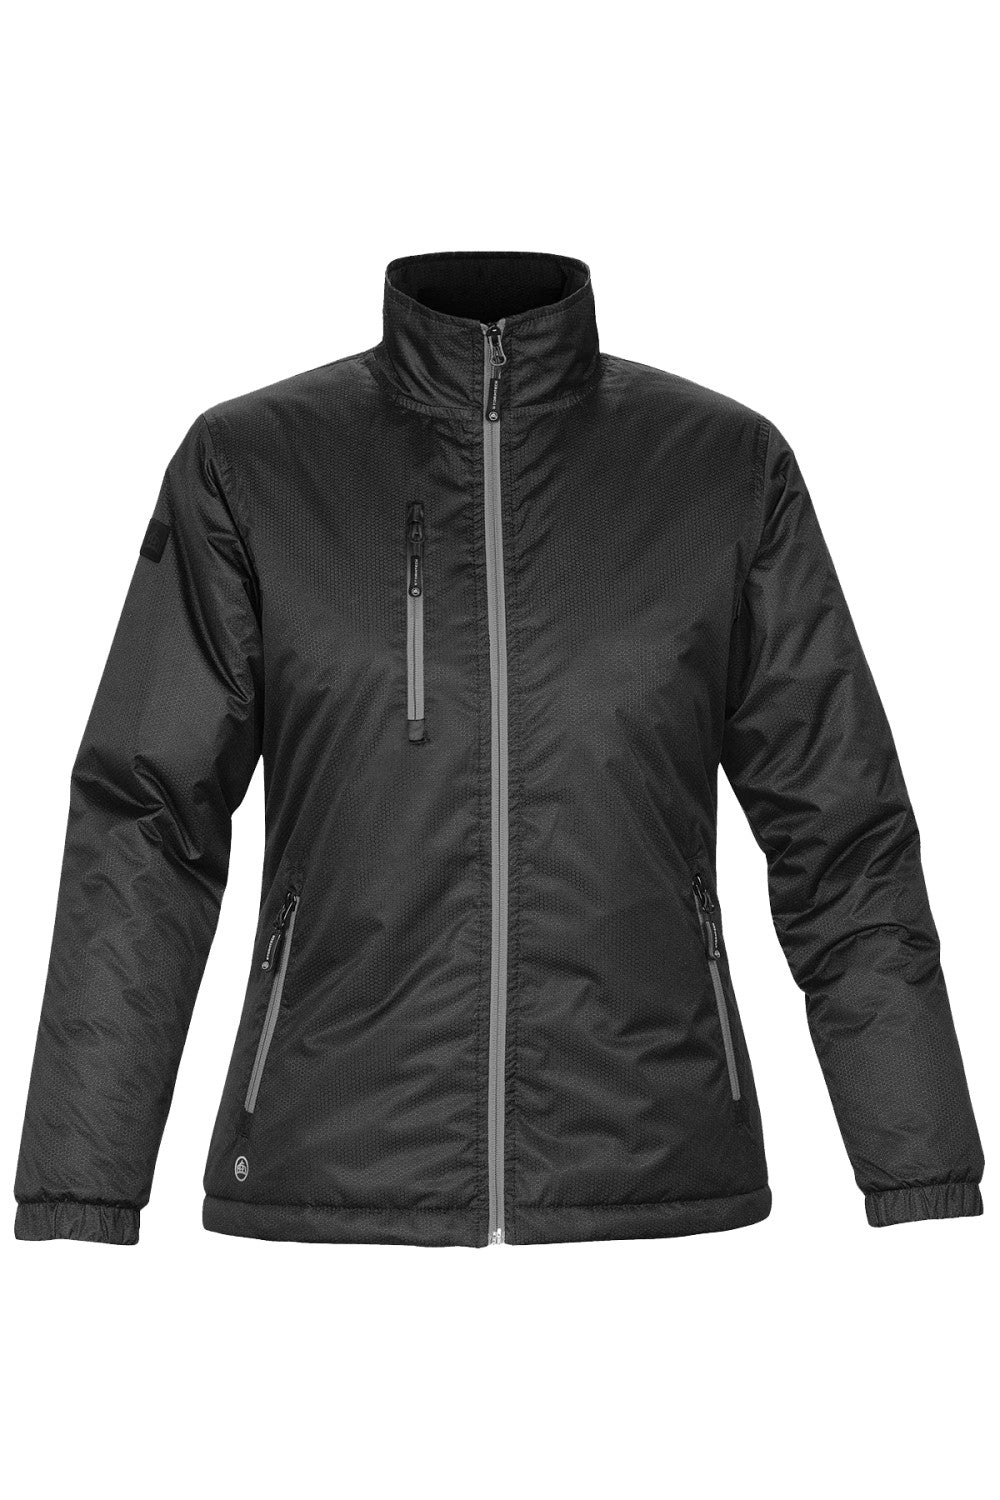 Stormtech Ladies/Womens Axis Water Resistant Jacket (Black/Black)